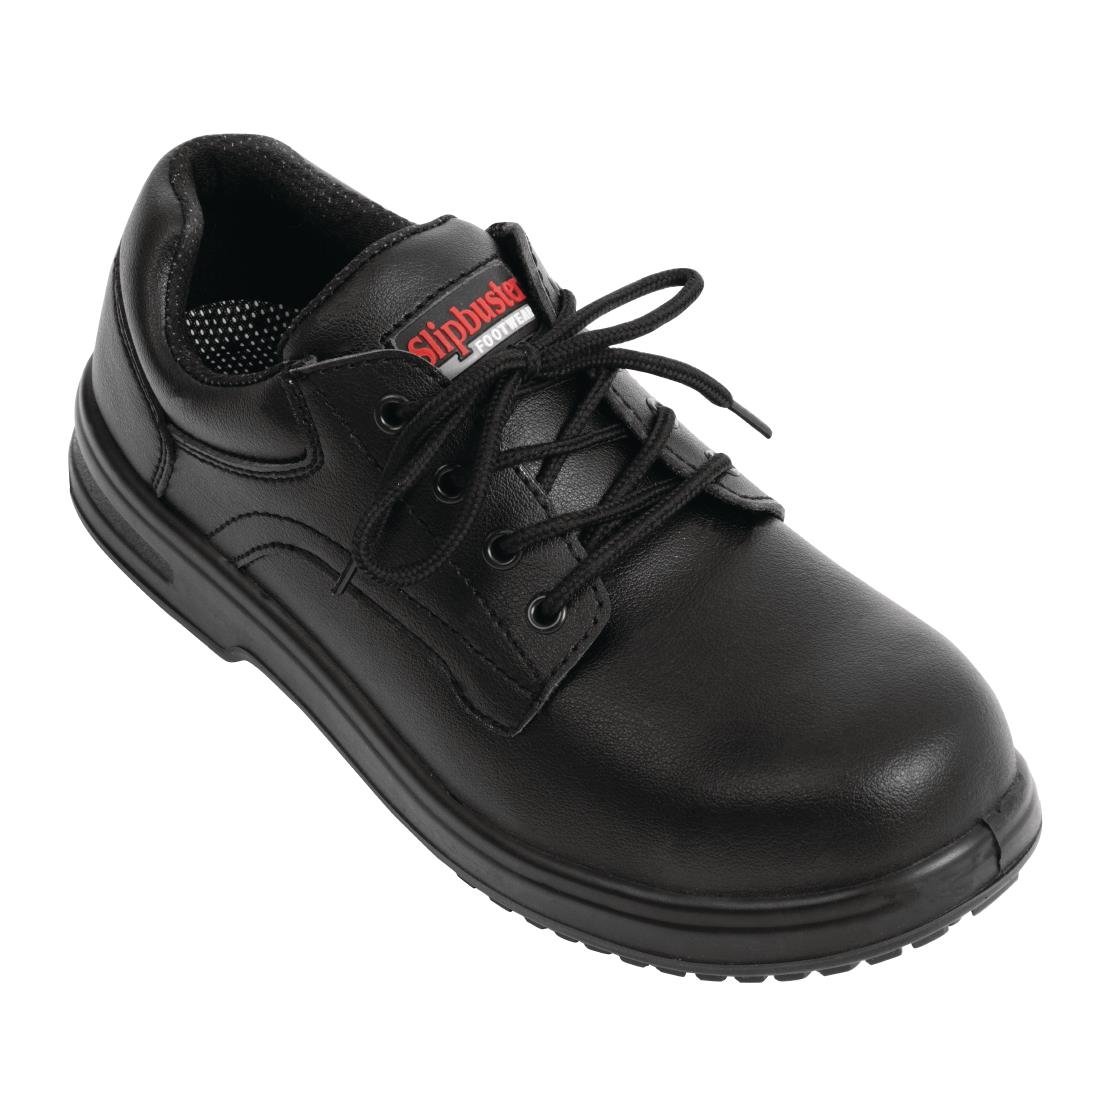 BB498-40 Slipbuster Basic Shoes Slip Resistant Black 40 JD Catering Equipment Solutions Ltd